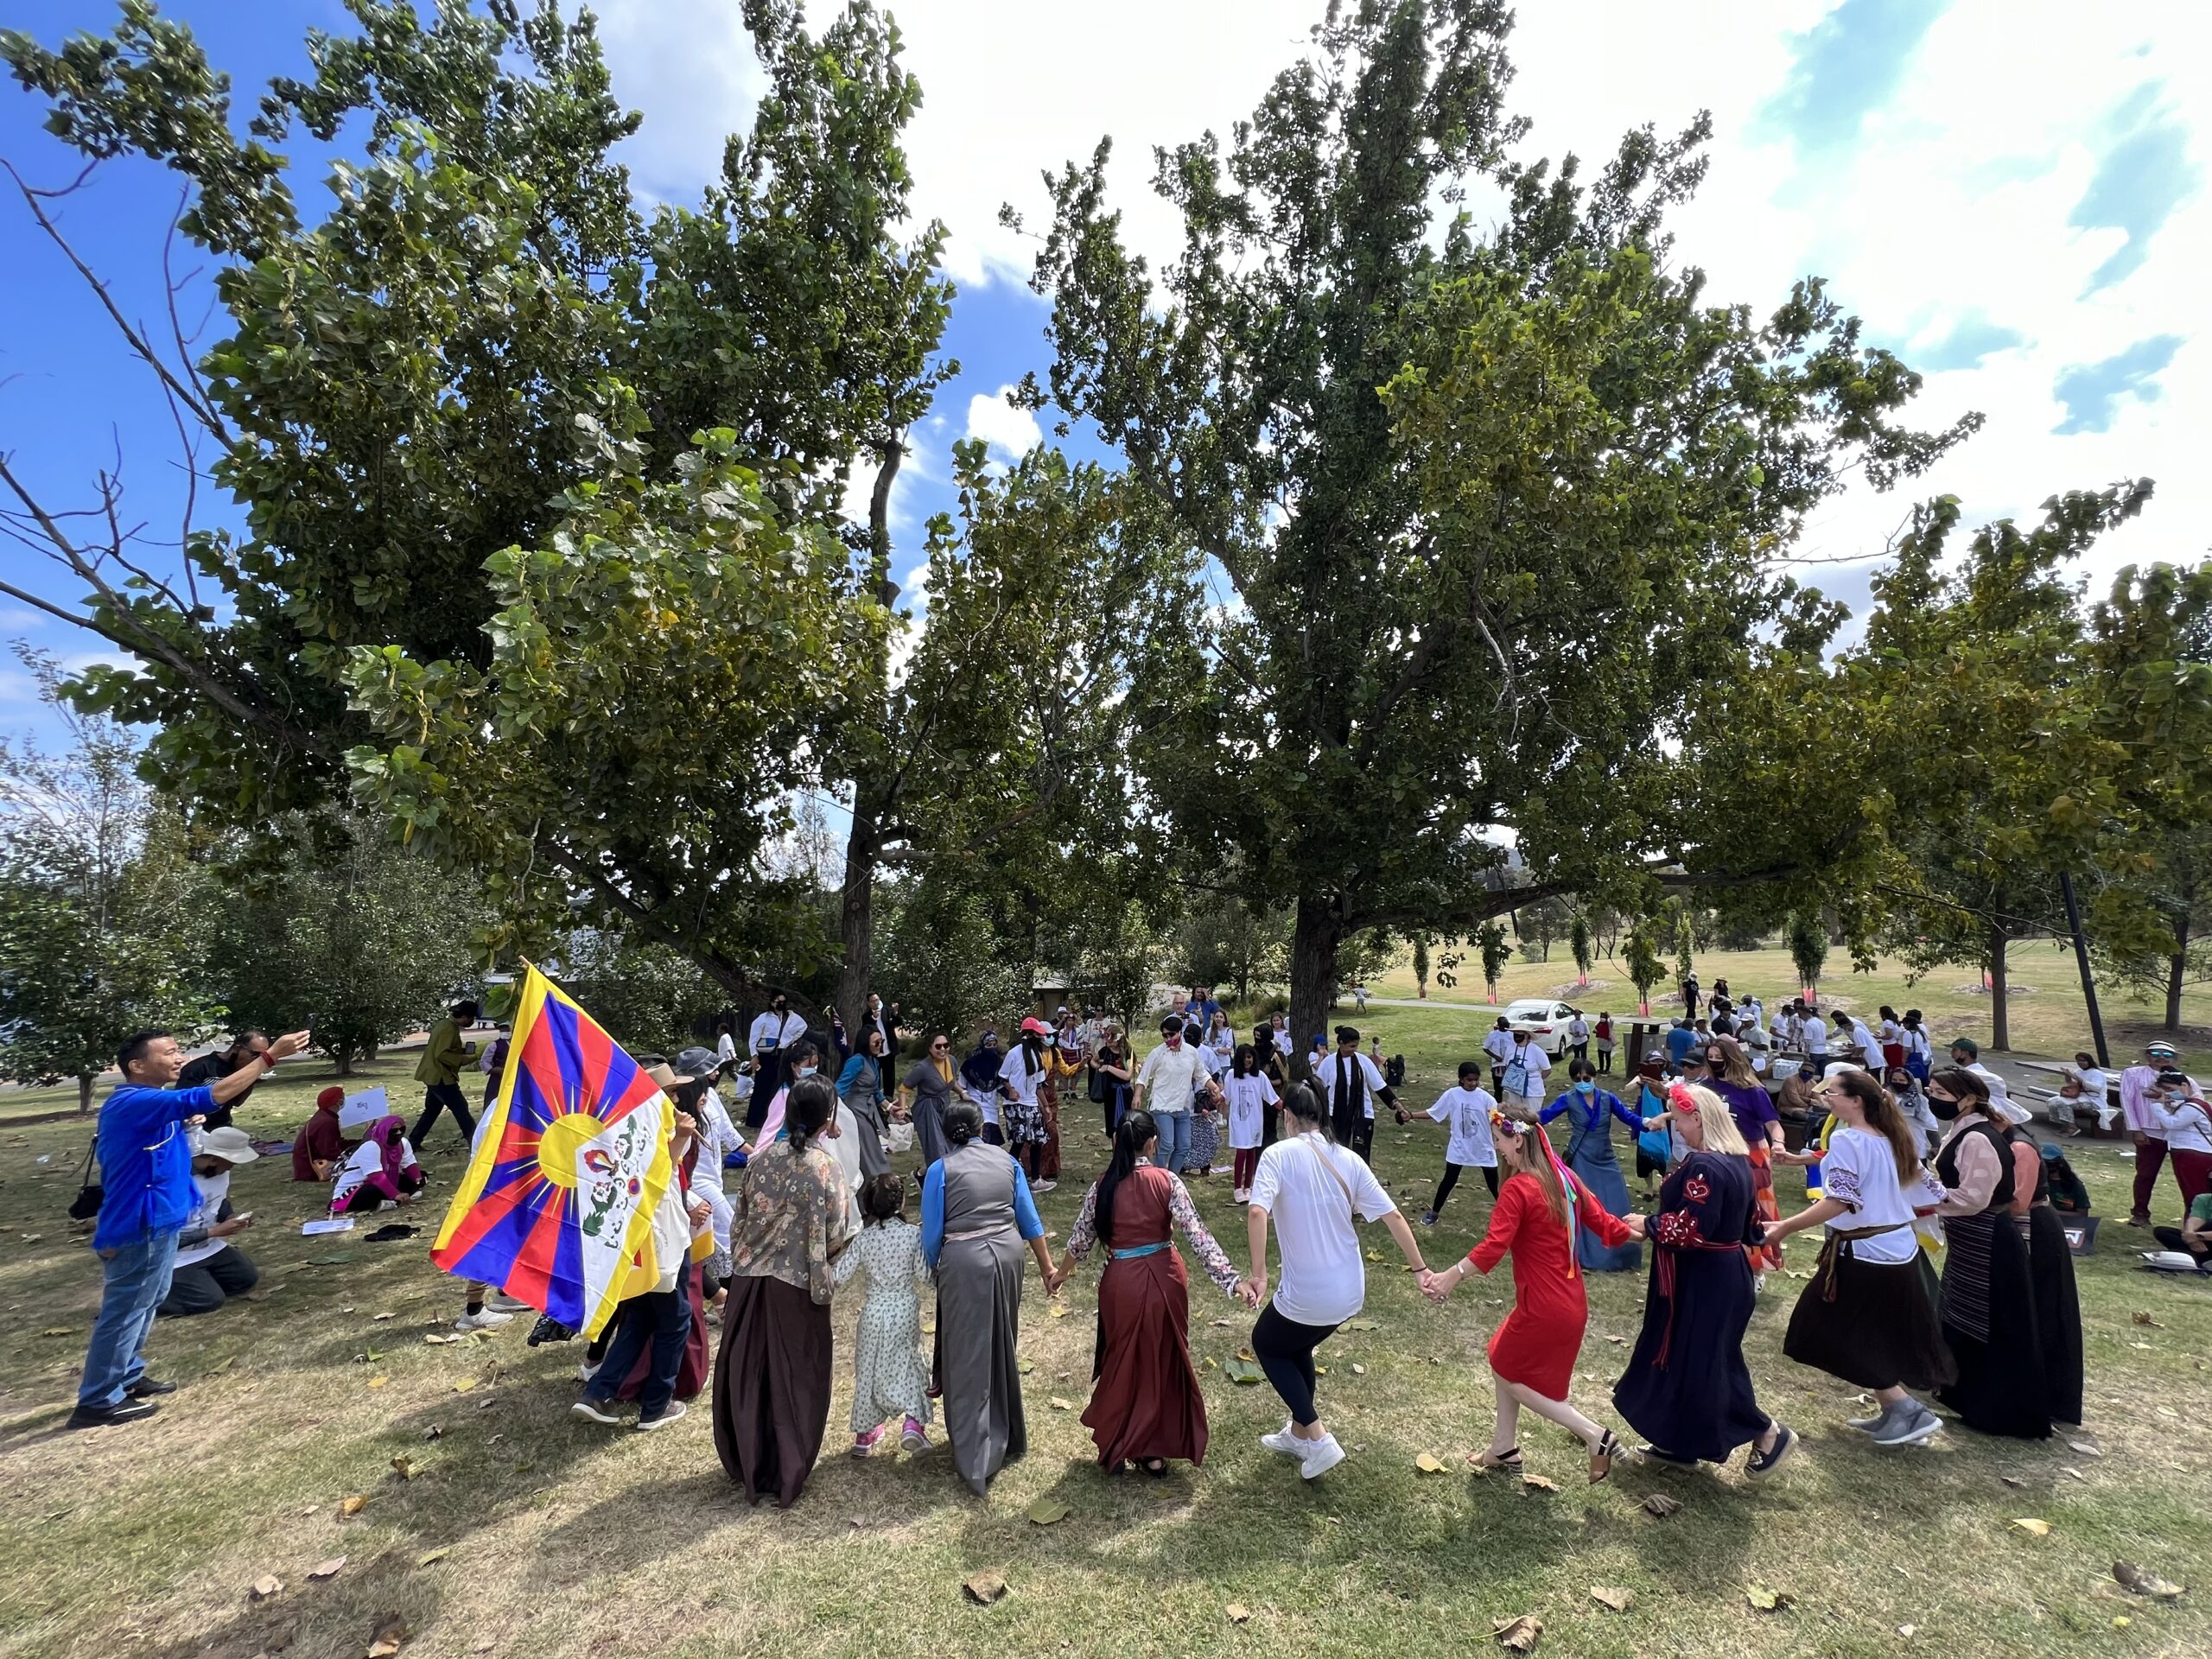 Membros da comunidade tibetana apresentando a dança tibetana Gorshey no Dia Internacional da Língua Materna em Canberra escala 1 Canberra Tibetanos representam sua língua na Caminhada do Dia Internacional da Língua Materna na Austrália